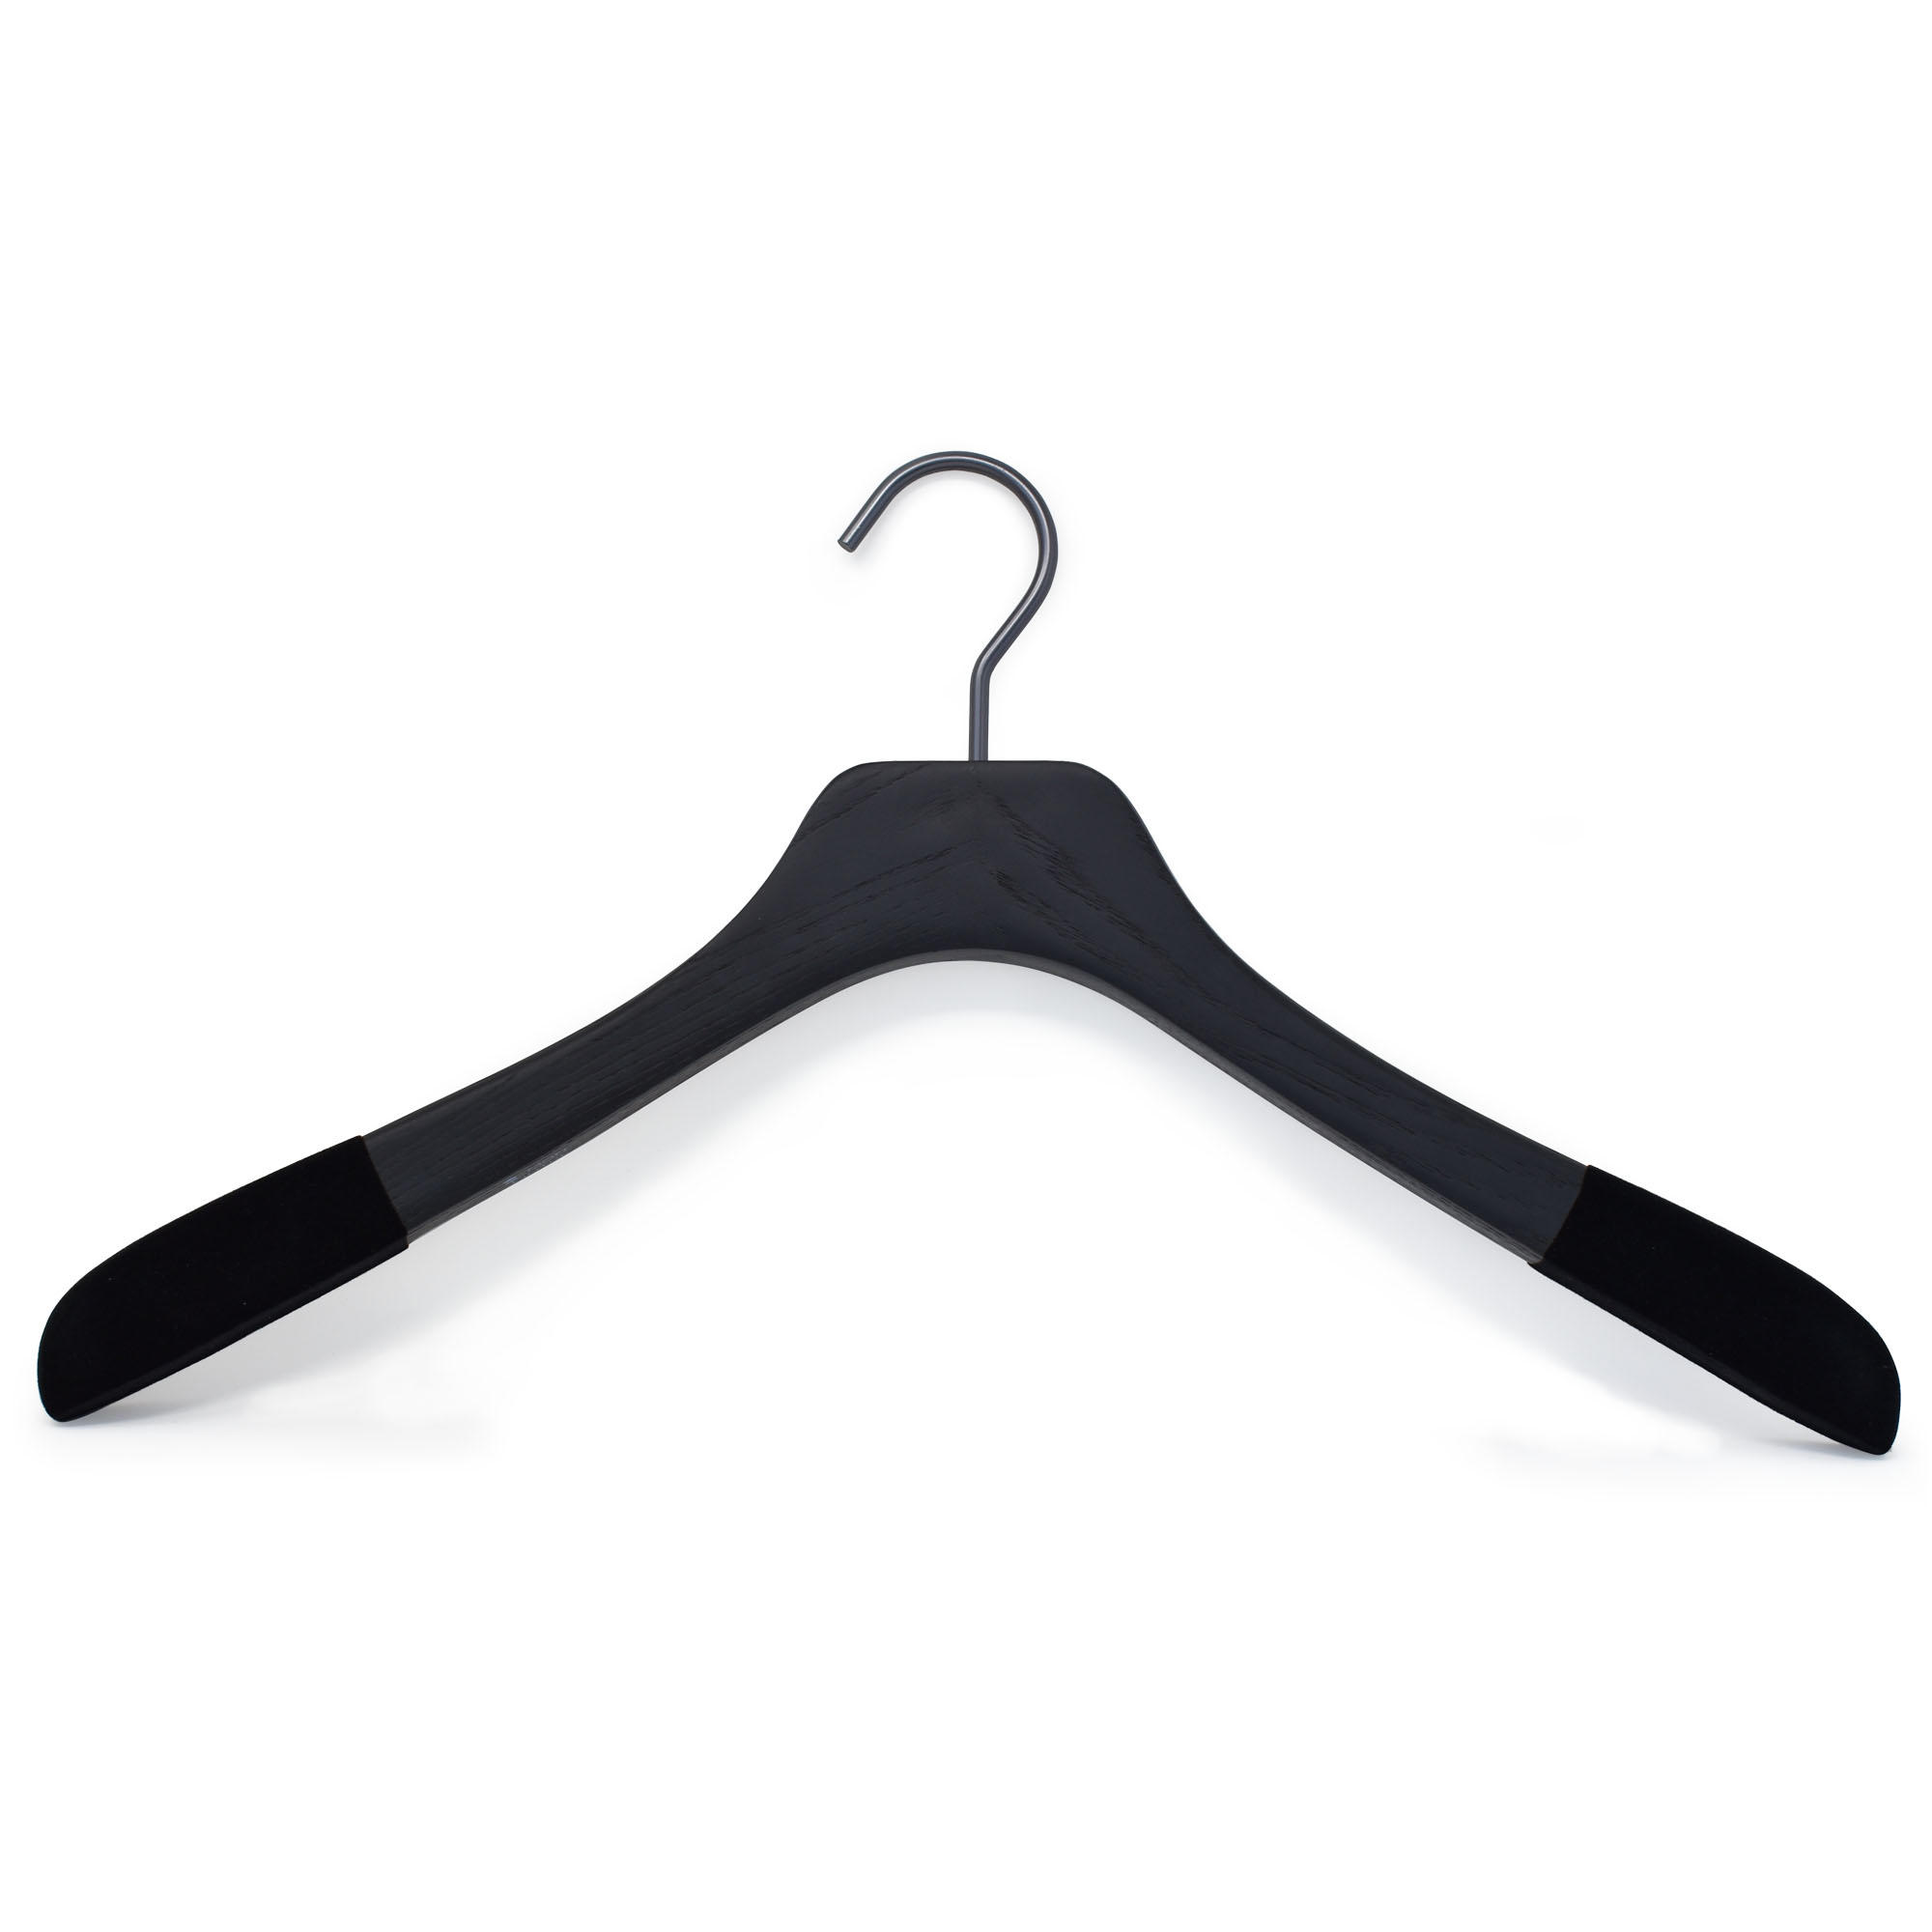 High-end hanger for shirts with velvet anti-slip